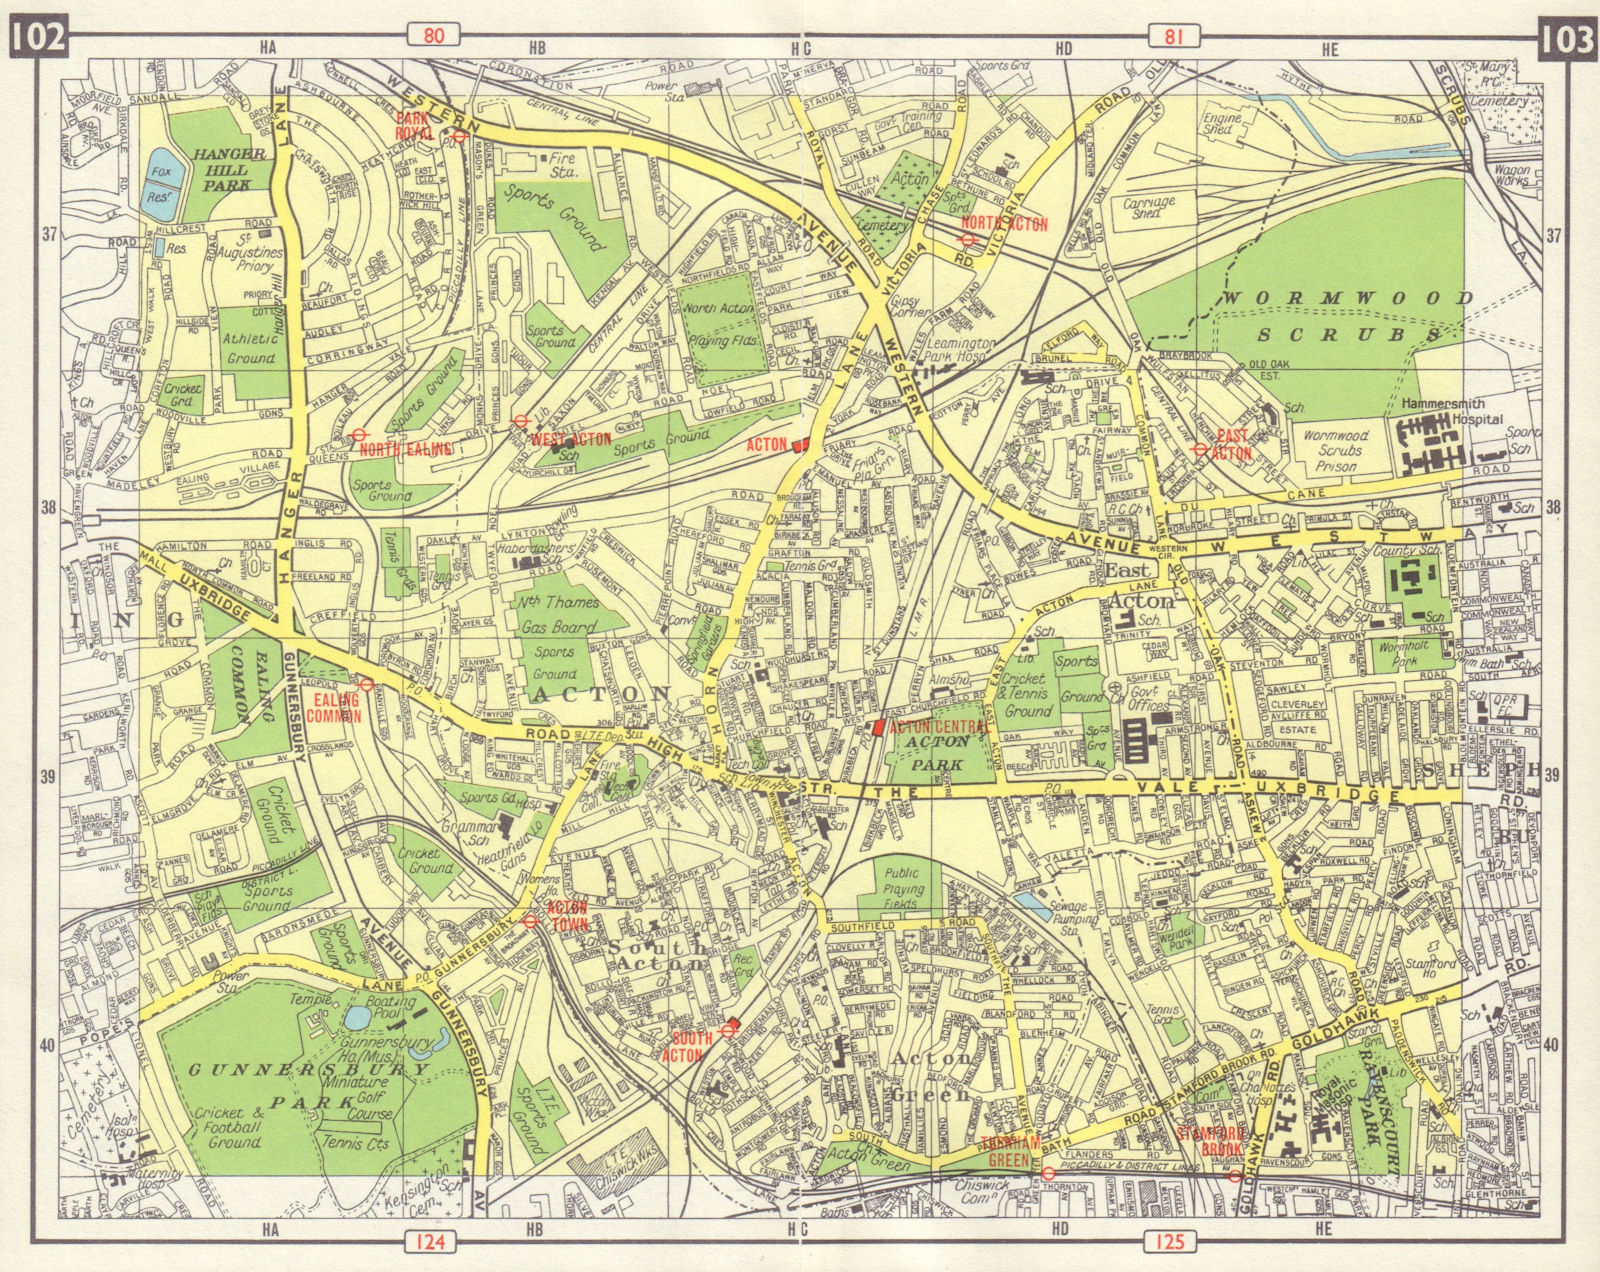 W LONDON Acton Gunnersbury Park Royal Ealing Common Turnham Green 1965 old map